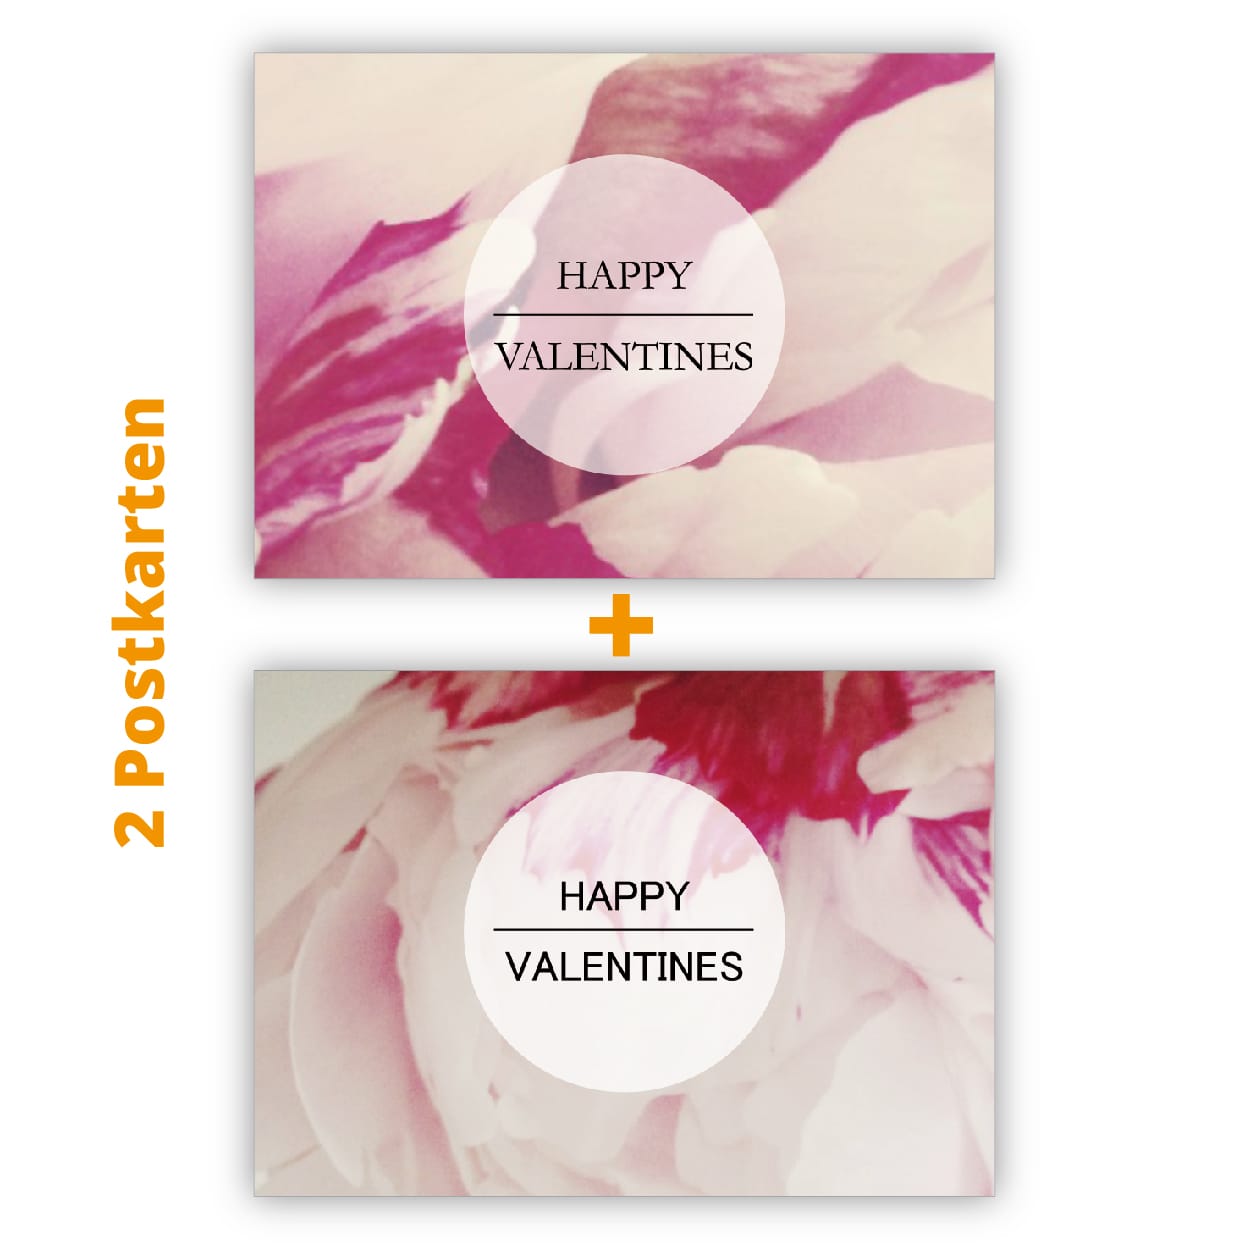 Kartenkaufrausch Postkarten in rosa: Valentins Postkarten mit Tulpen